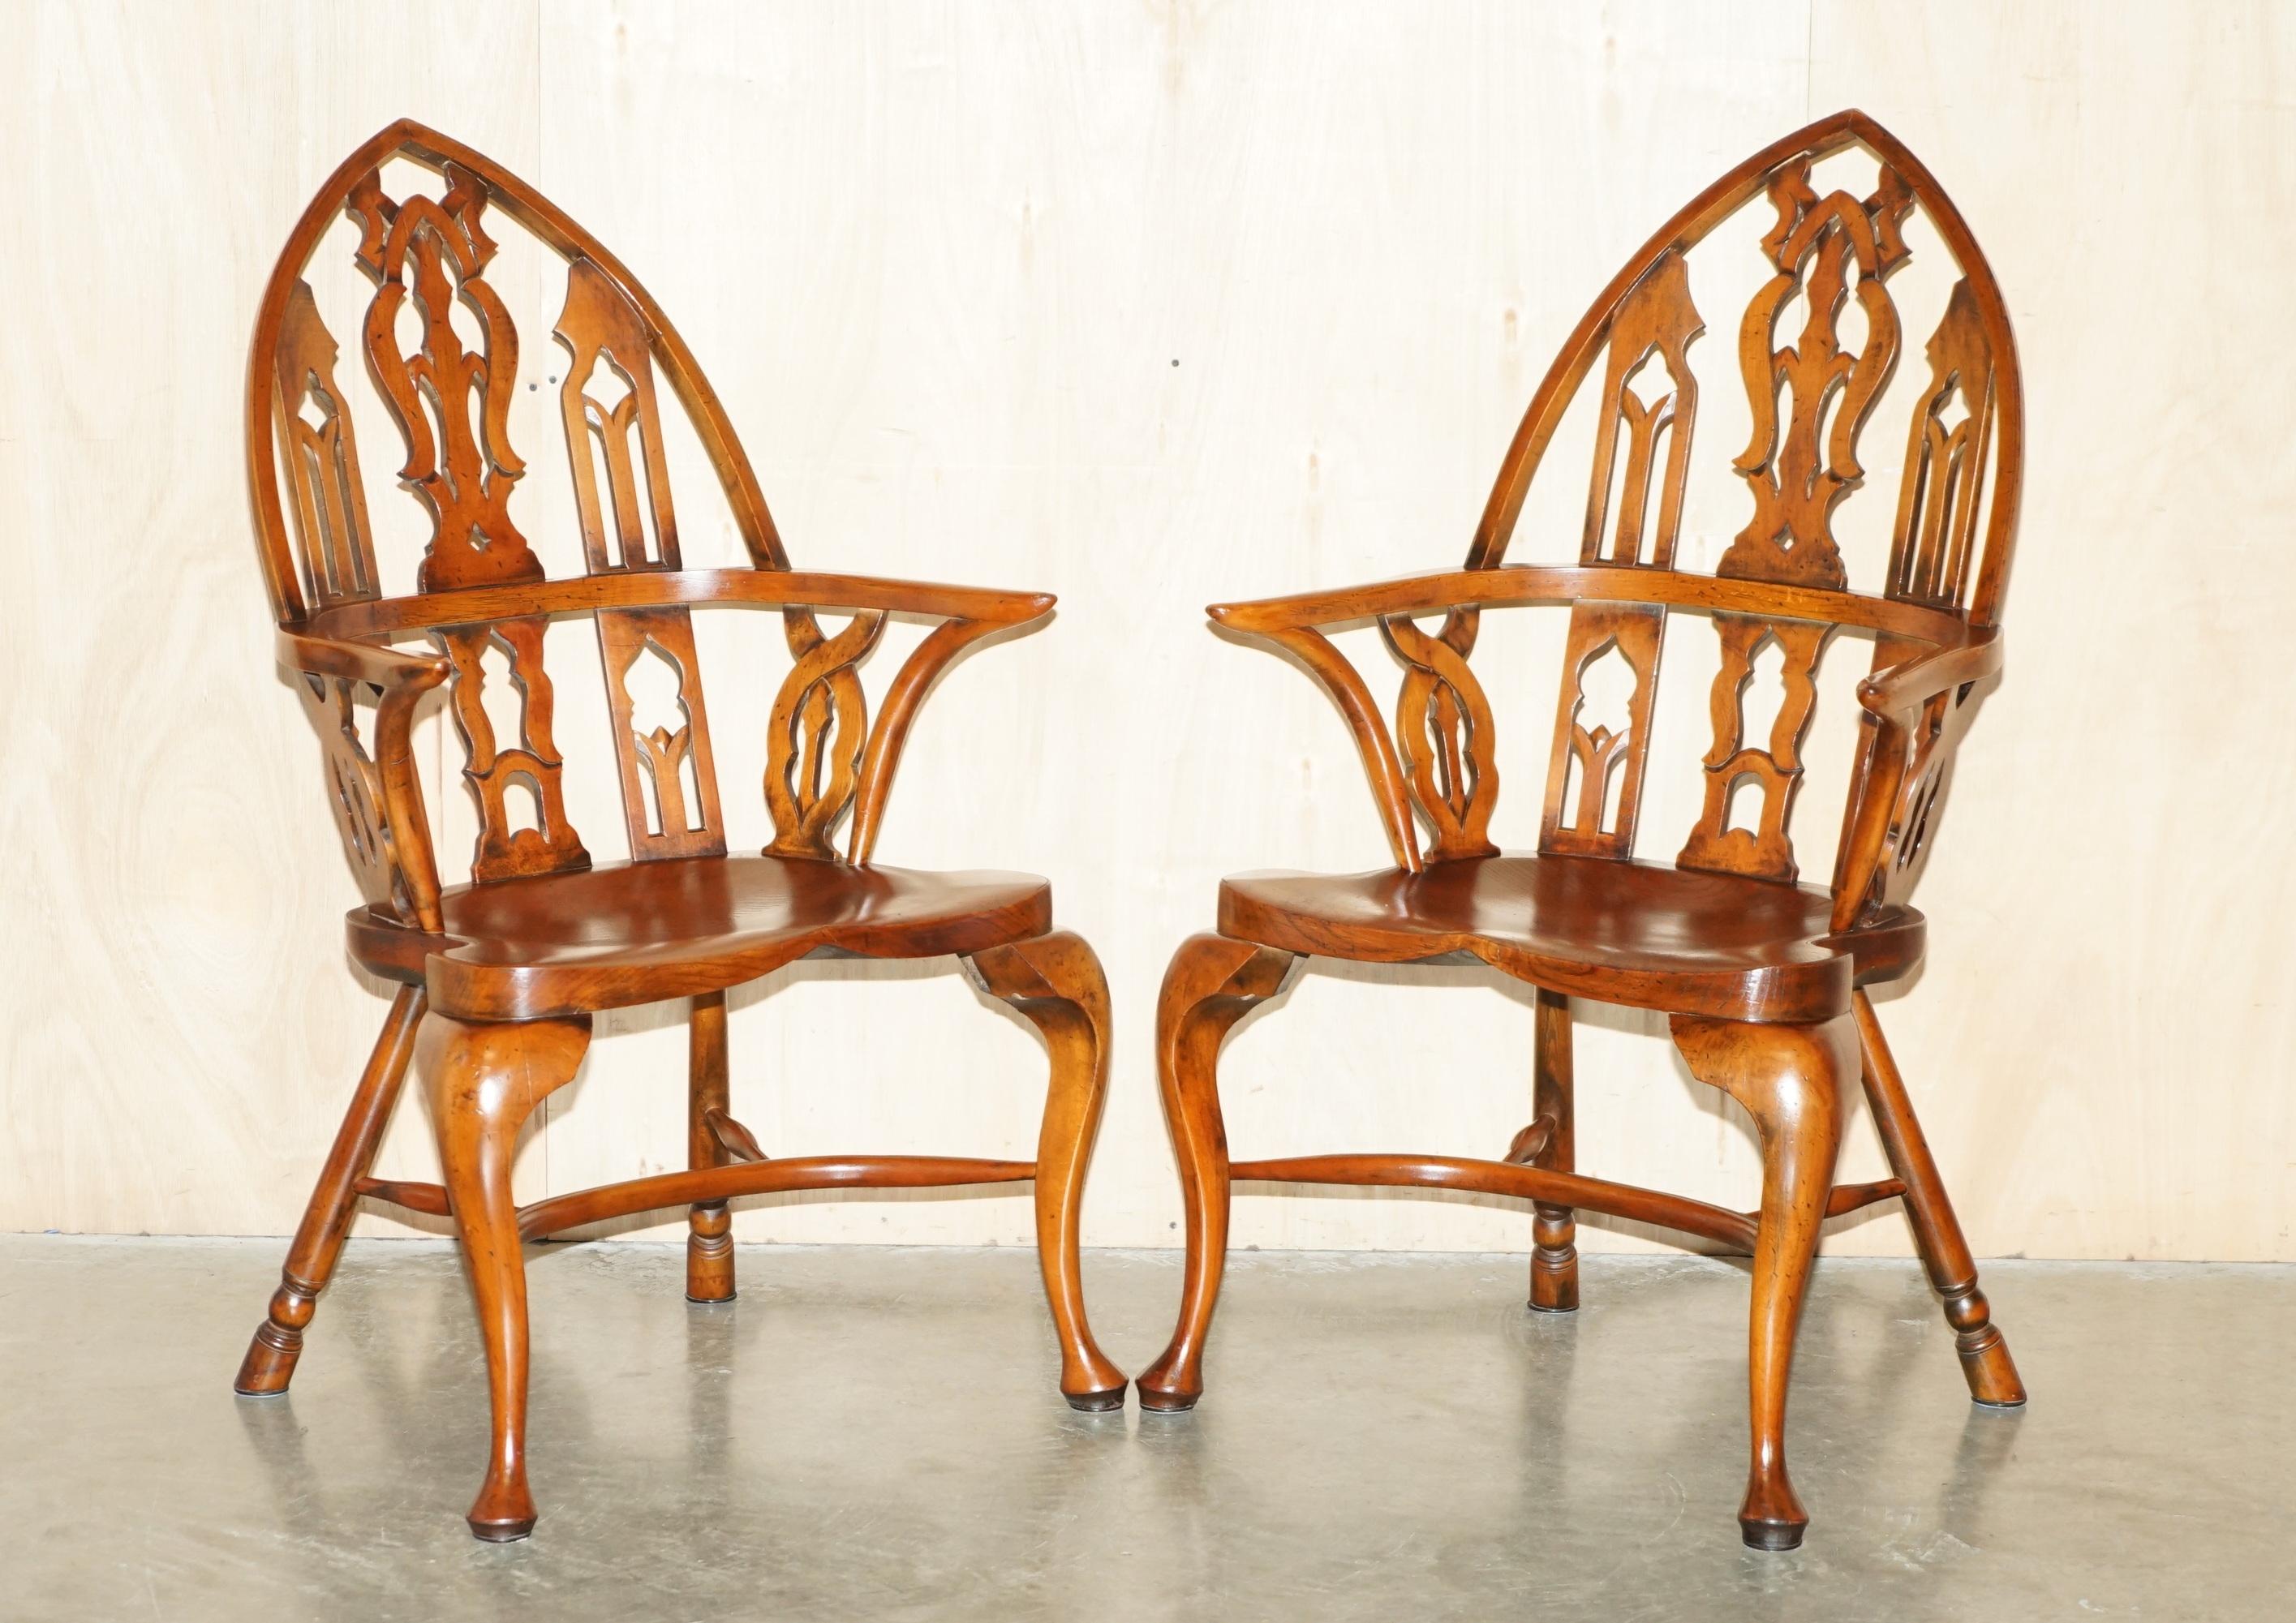 Royal House Antiques

Royal House Antiques freut sich, diese hübsche Sitzgruppe aus vier gotischen Windsor-Sesseln aus Eibe und Ulme aus den 1940er Jahren zum Verkauf anbieten zu können. 

Bitte beachten Sie die Liefergebühr aufgeführt ist nur ein